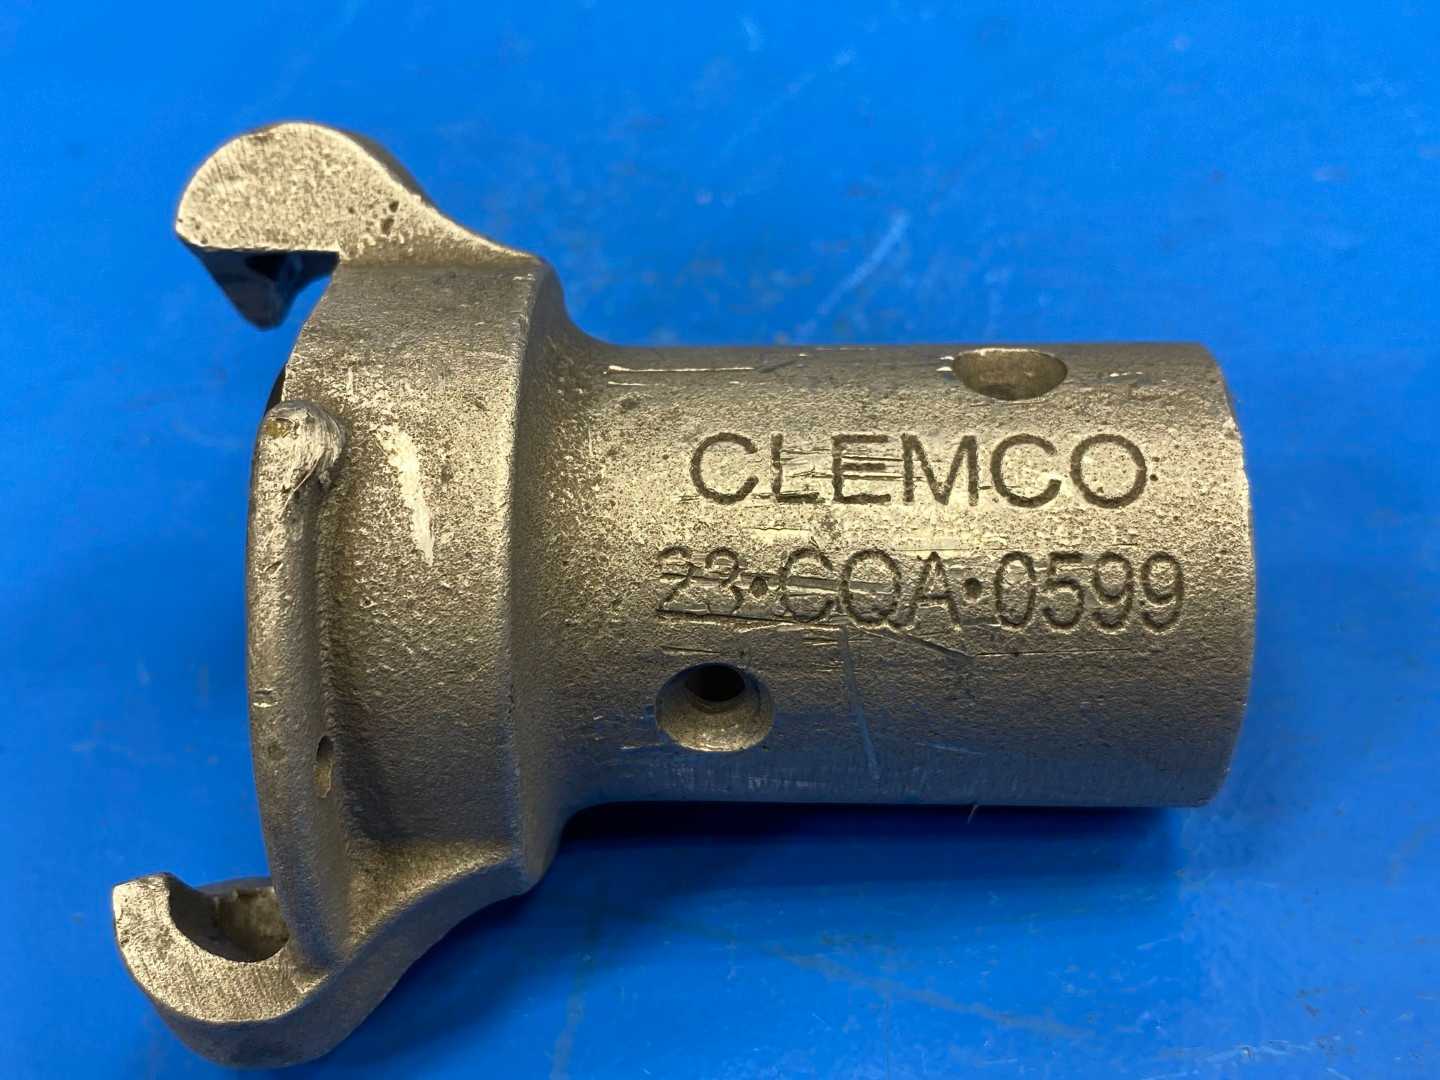 CLEMCO 00599 CQA-1/2 Aluminum Quick Coupling (Pittsburgh Spray Equip)